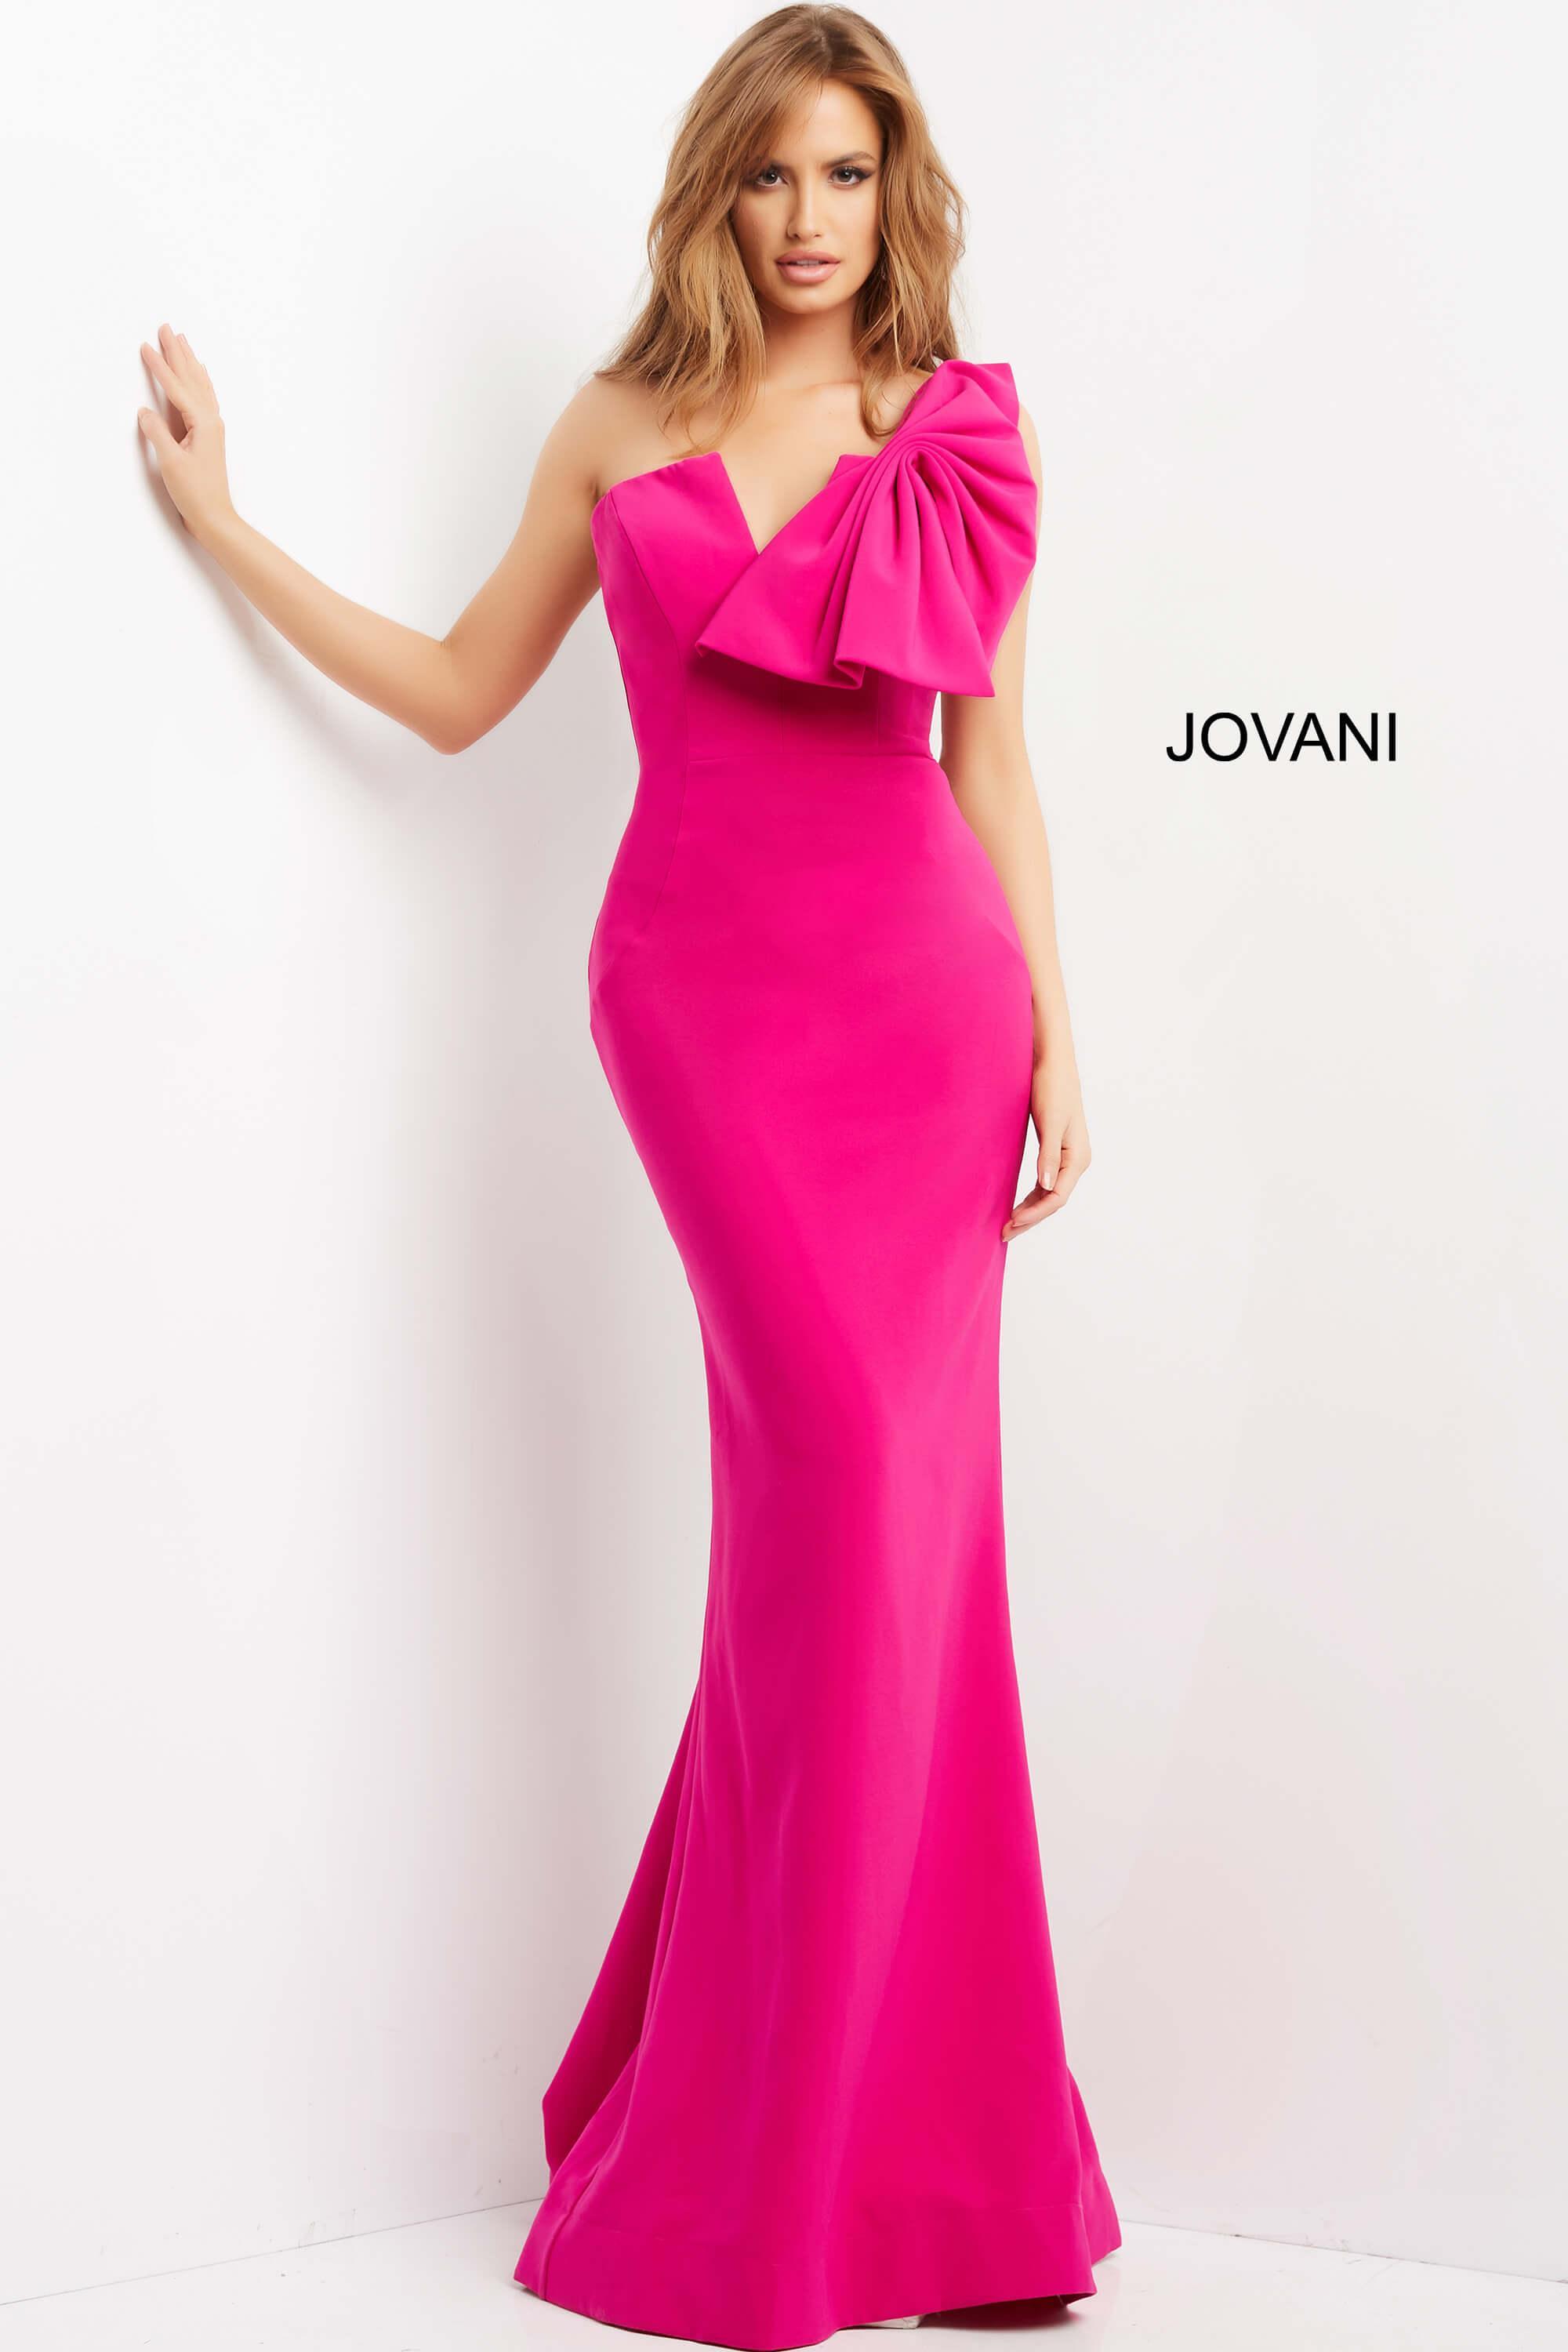 Jovani One Shoulder Bow Formal Long Dress 07306 - The Dress Outlet